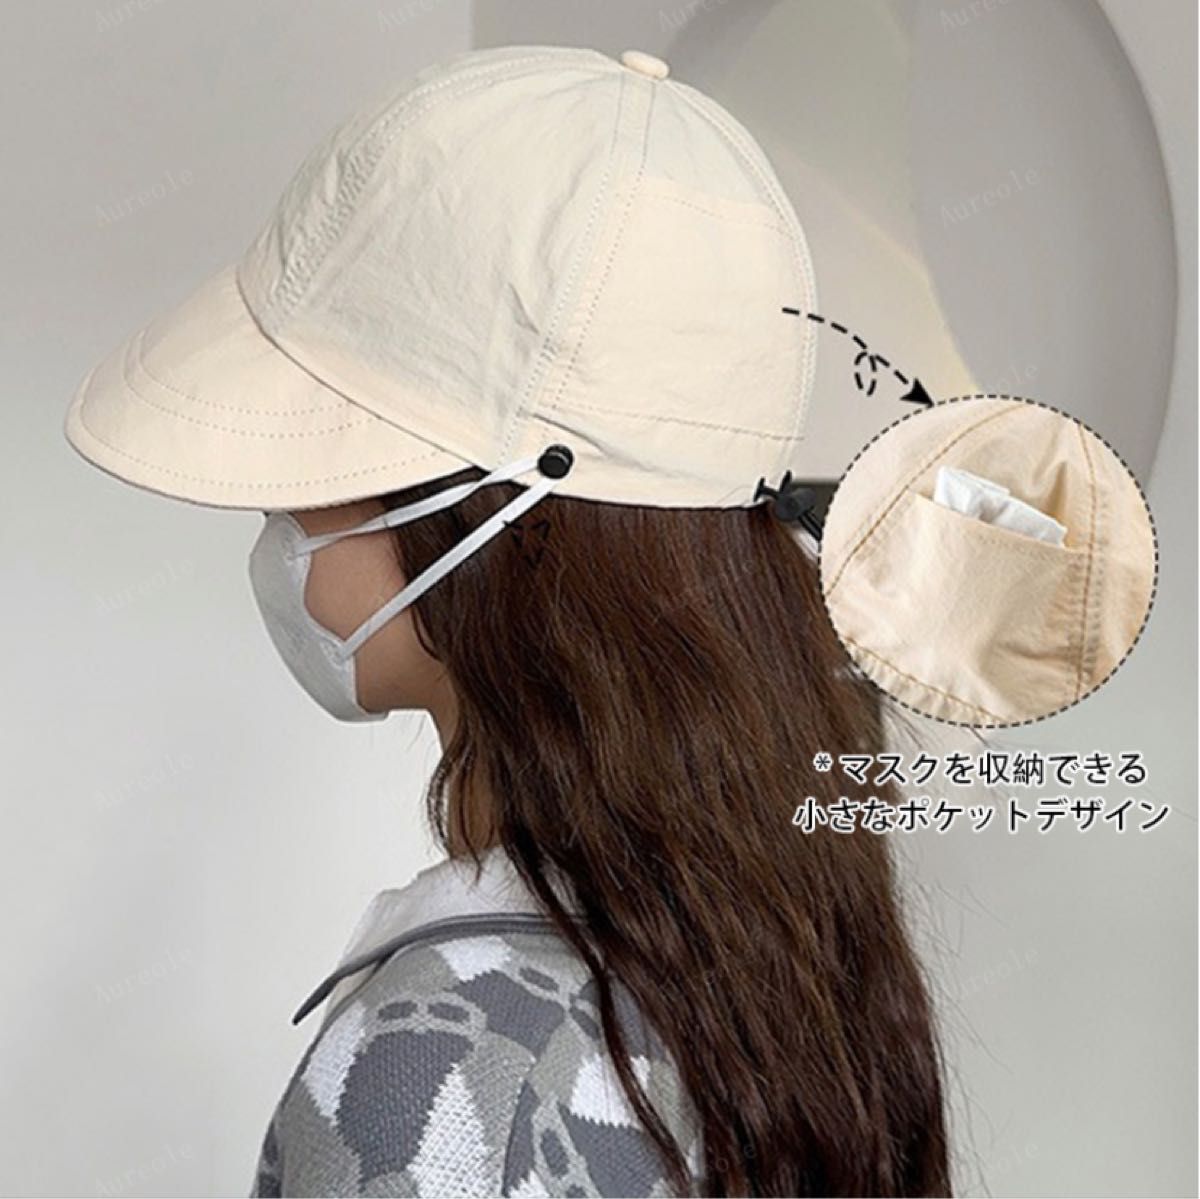 帽子 レディース マスク掛けボタン付き 耳痛くない4カラー 遮光 UVカット 折り畳み可能  サイズ調整OK  キャップ 春夏帽子